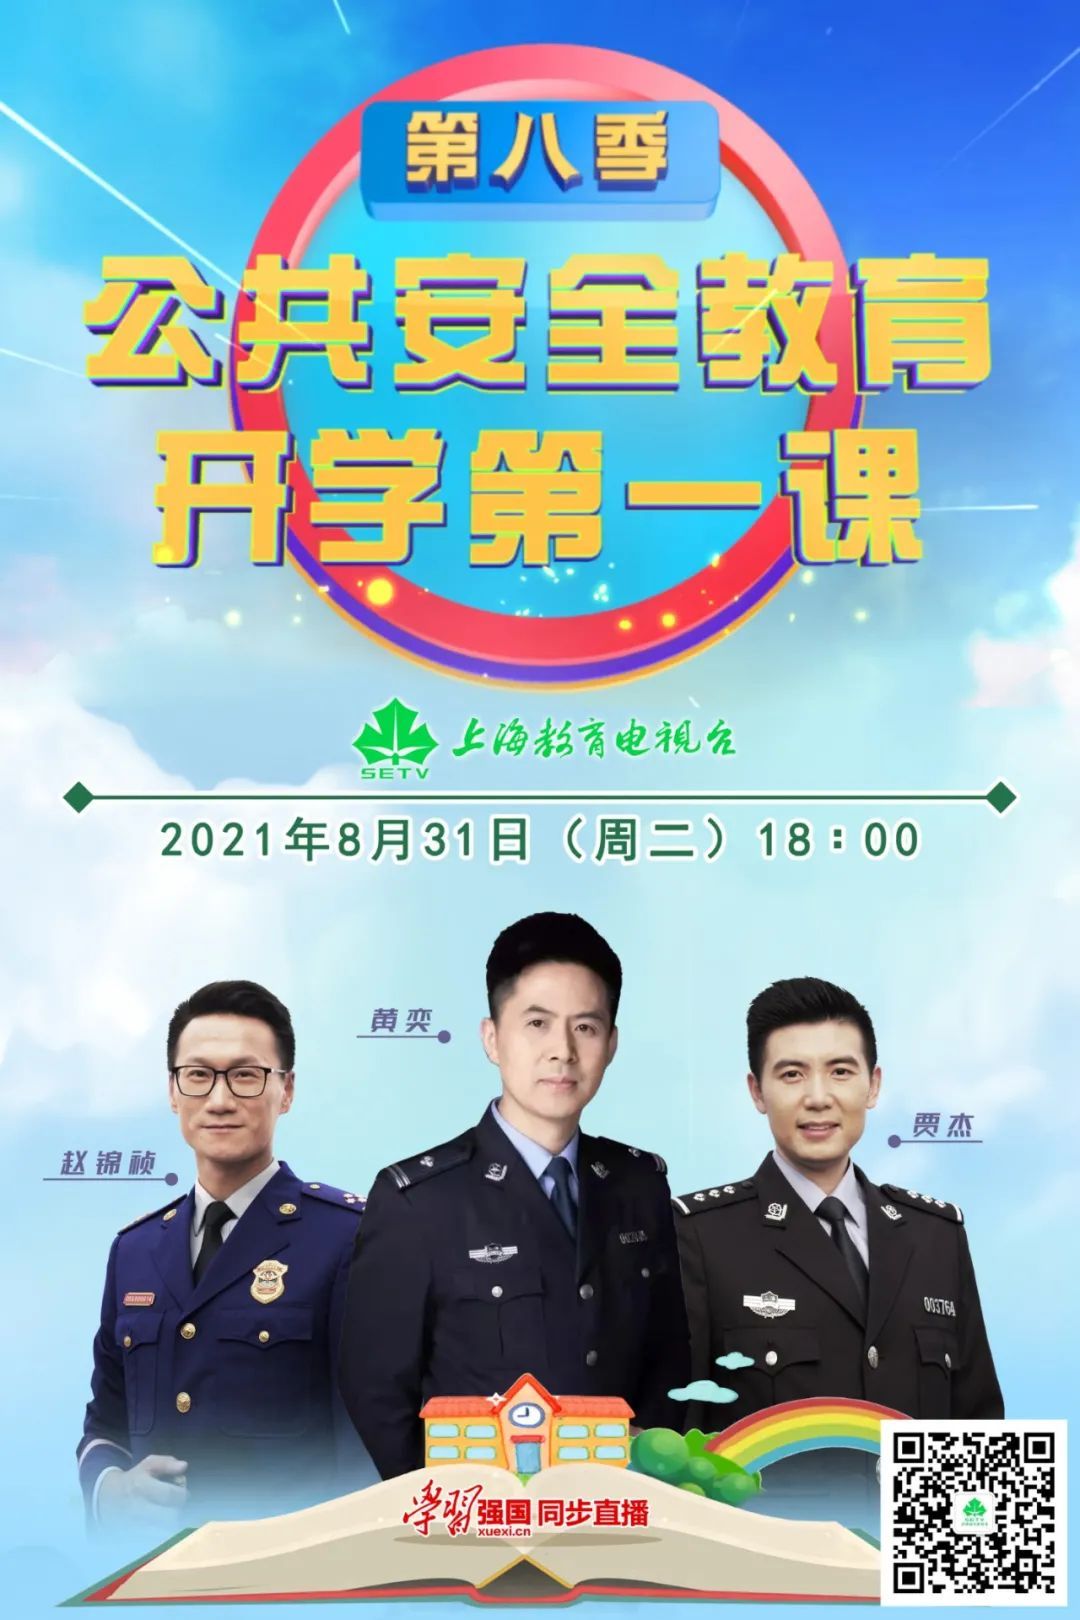 8月31日18:00至18:45,节目将在上海教育电视台首播,上海广播电视台